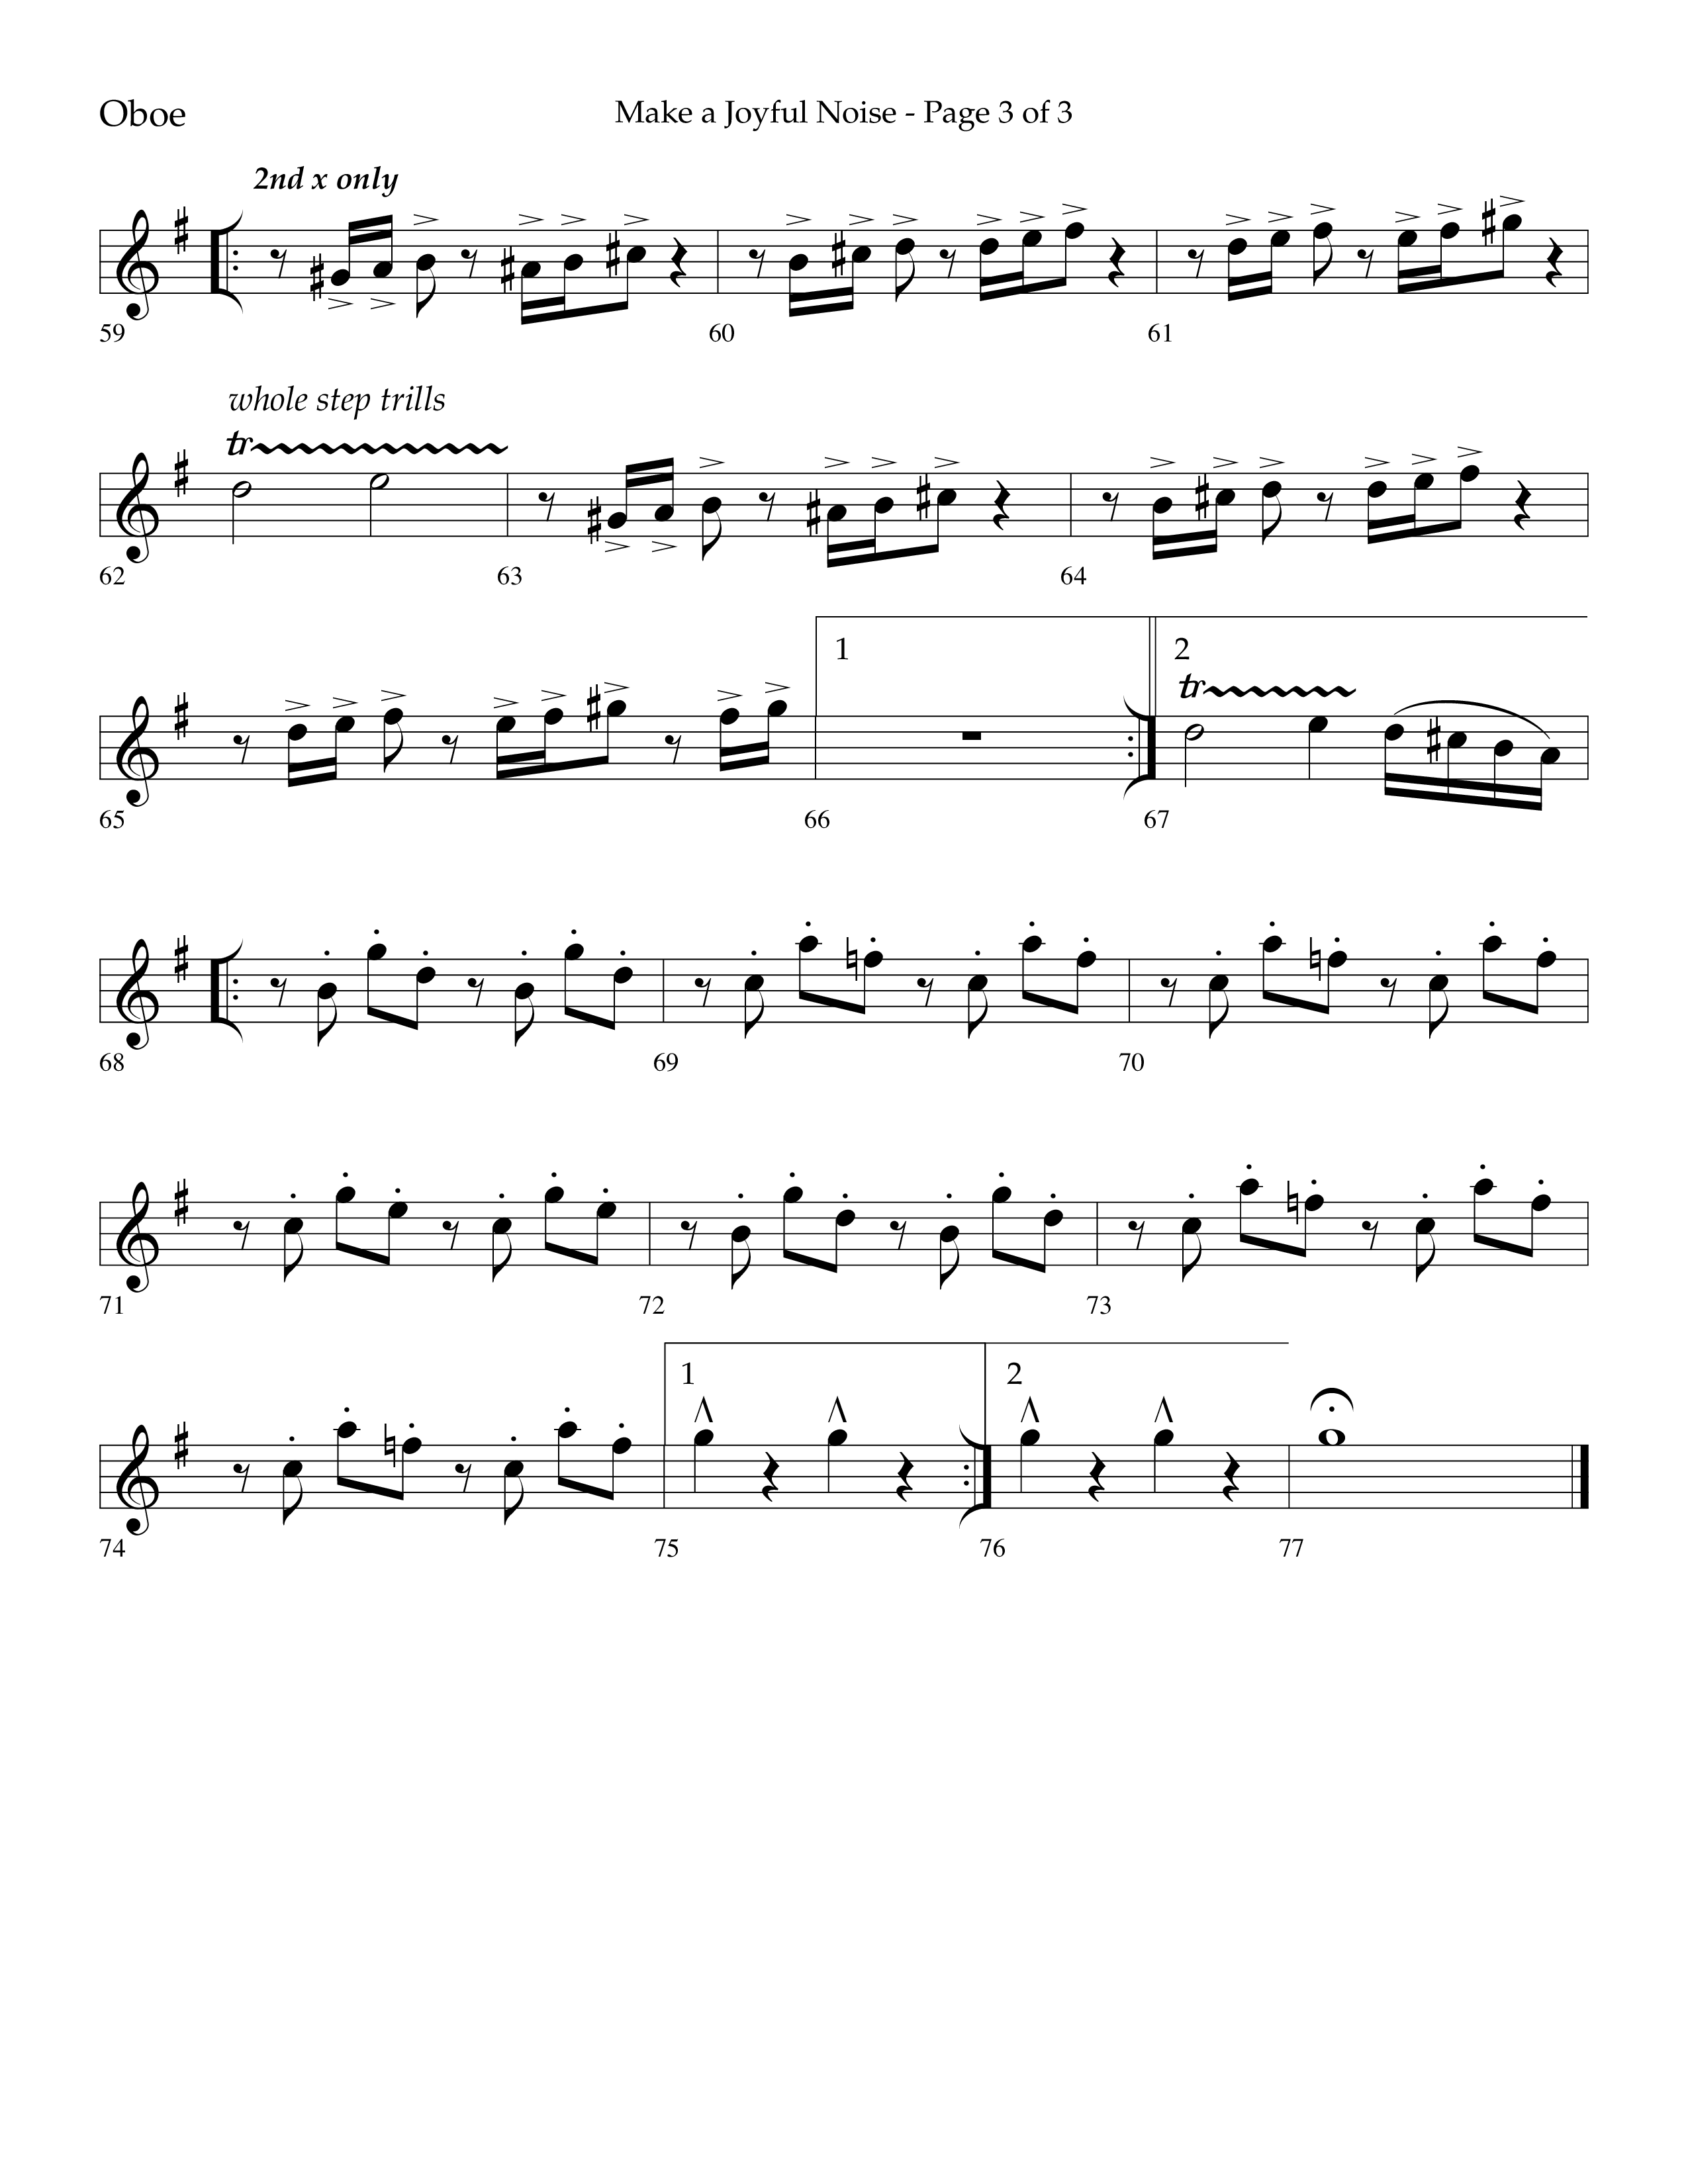 Make A Joyful Noise (Choral Anthem SATB) Oboe (Lifeway Choral / Arr. David Wise / Orch. Daniel Semsen)